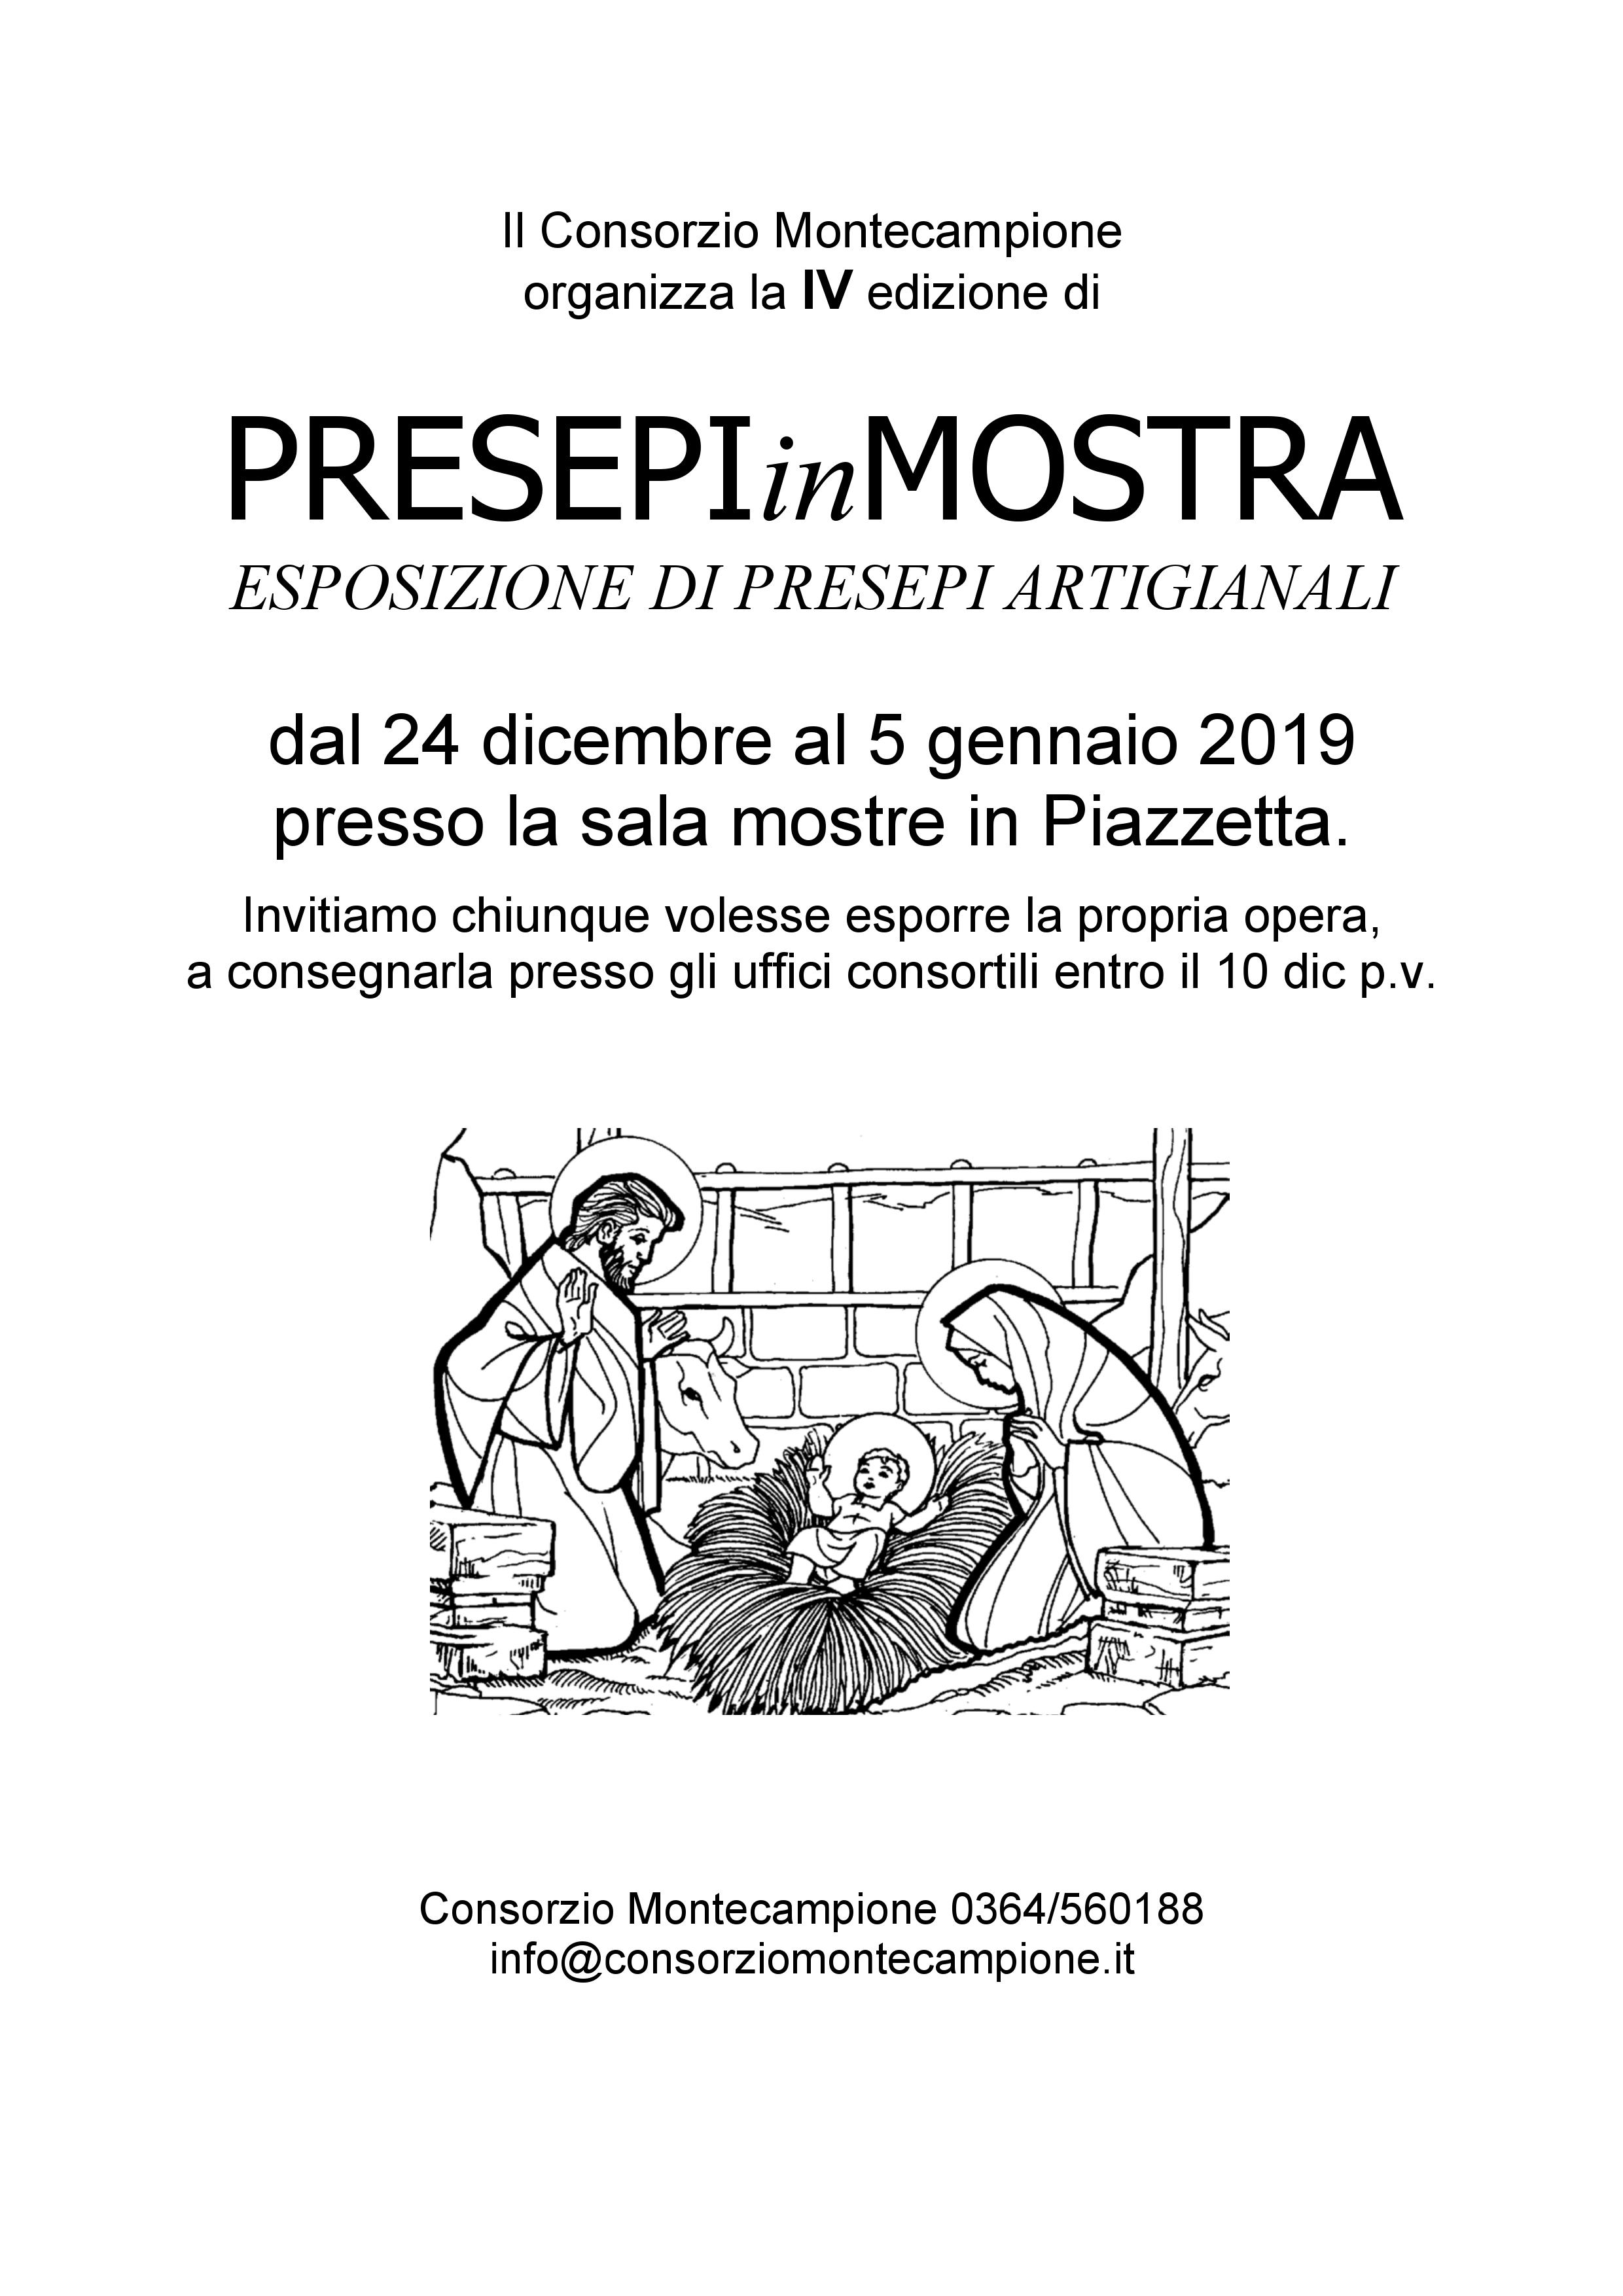 Consorzio Montecampione - Aperte le iscrizioni per la PRESEPI IN MOSTRA 2018/19